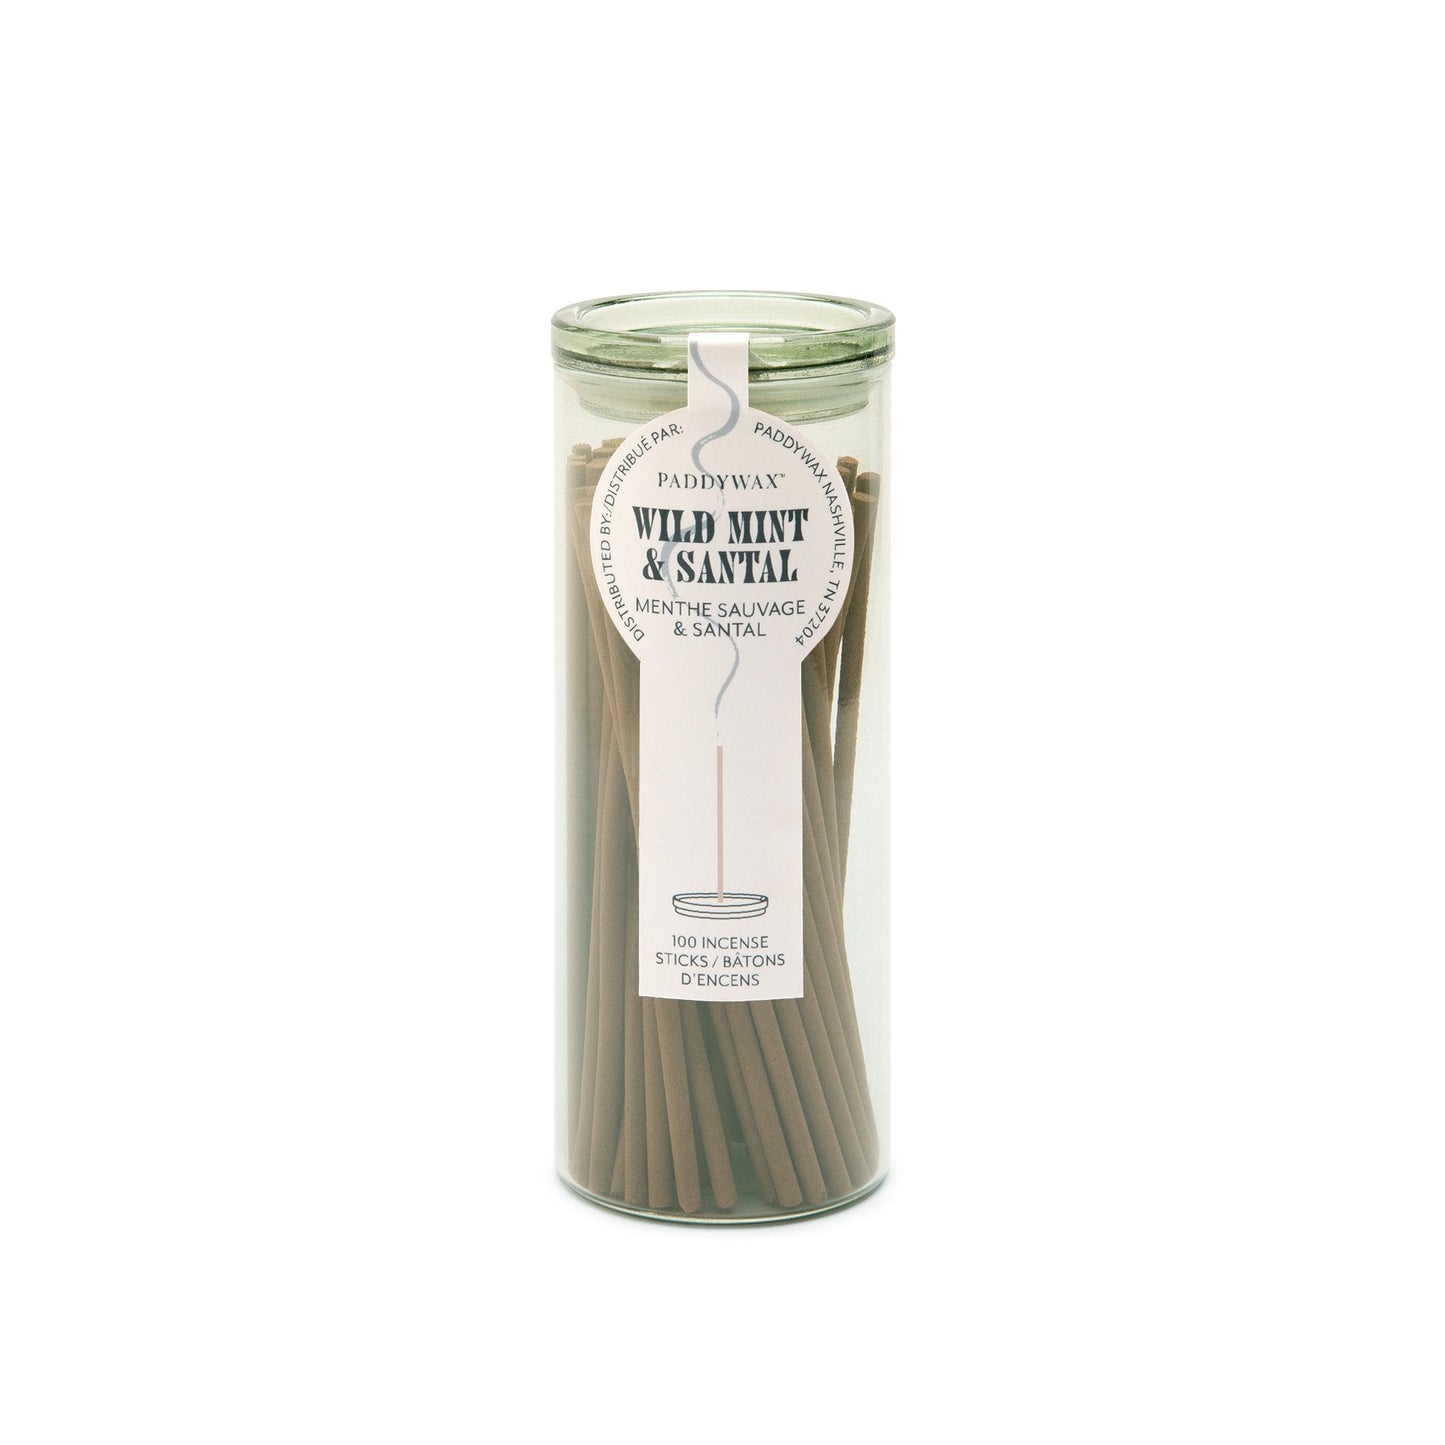 100 Incense Sticks - Wild Mint & Santal